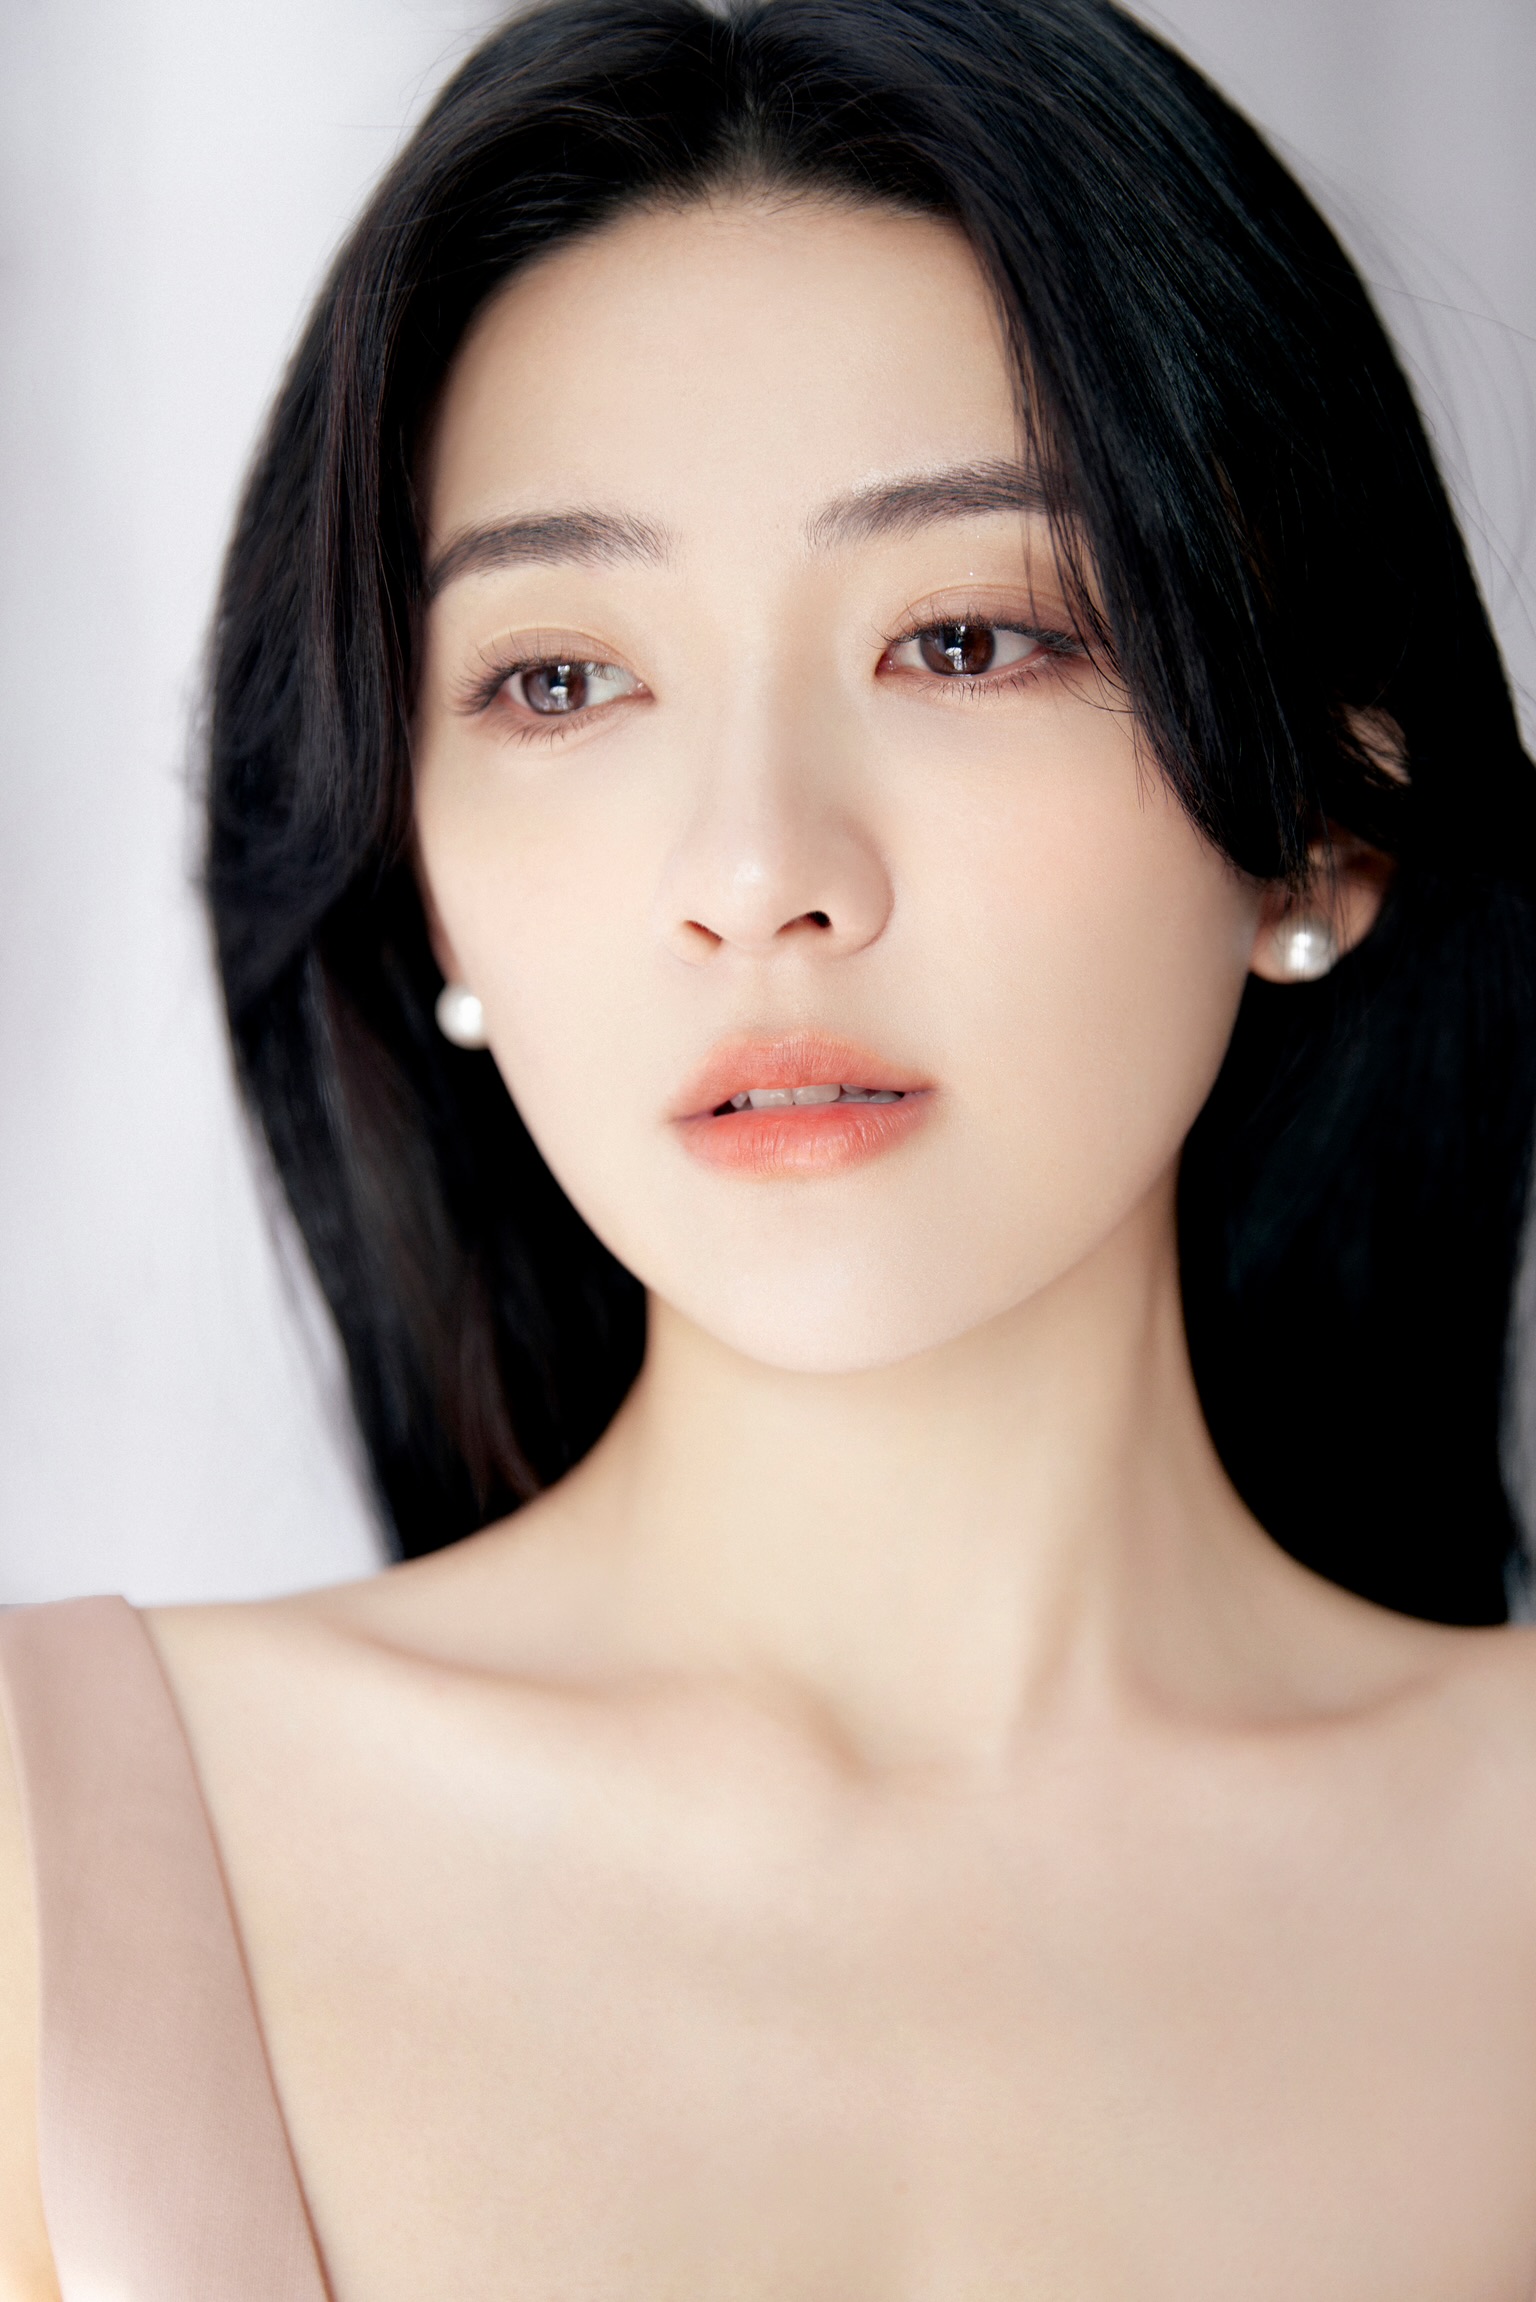 Asian Women Actress 1536x2302